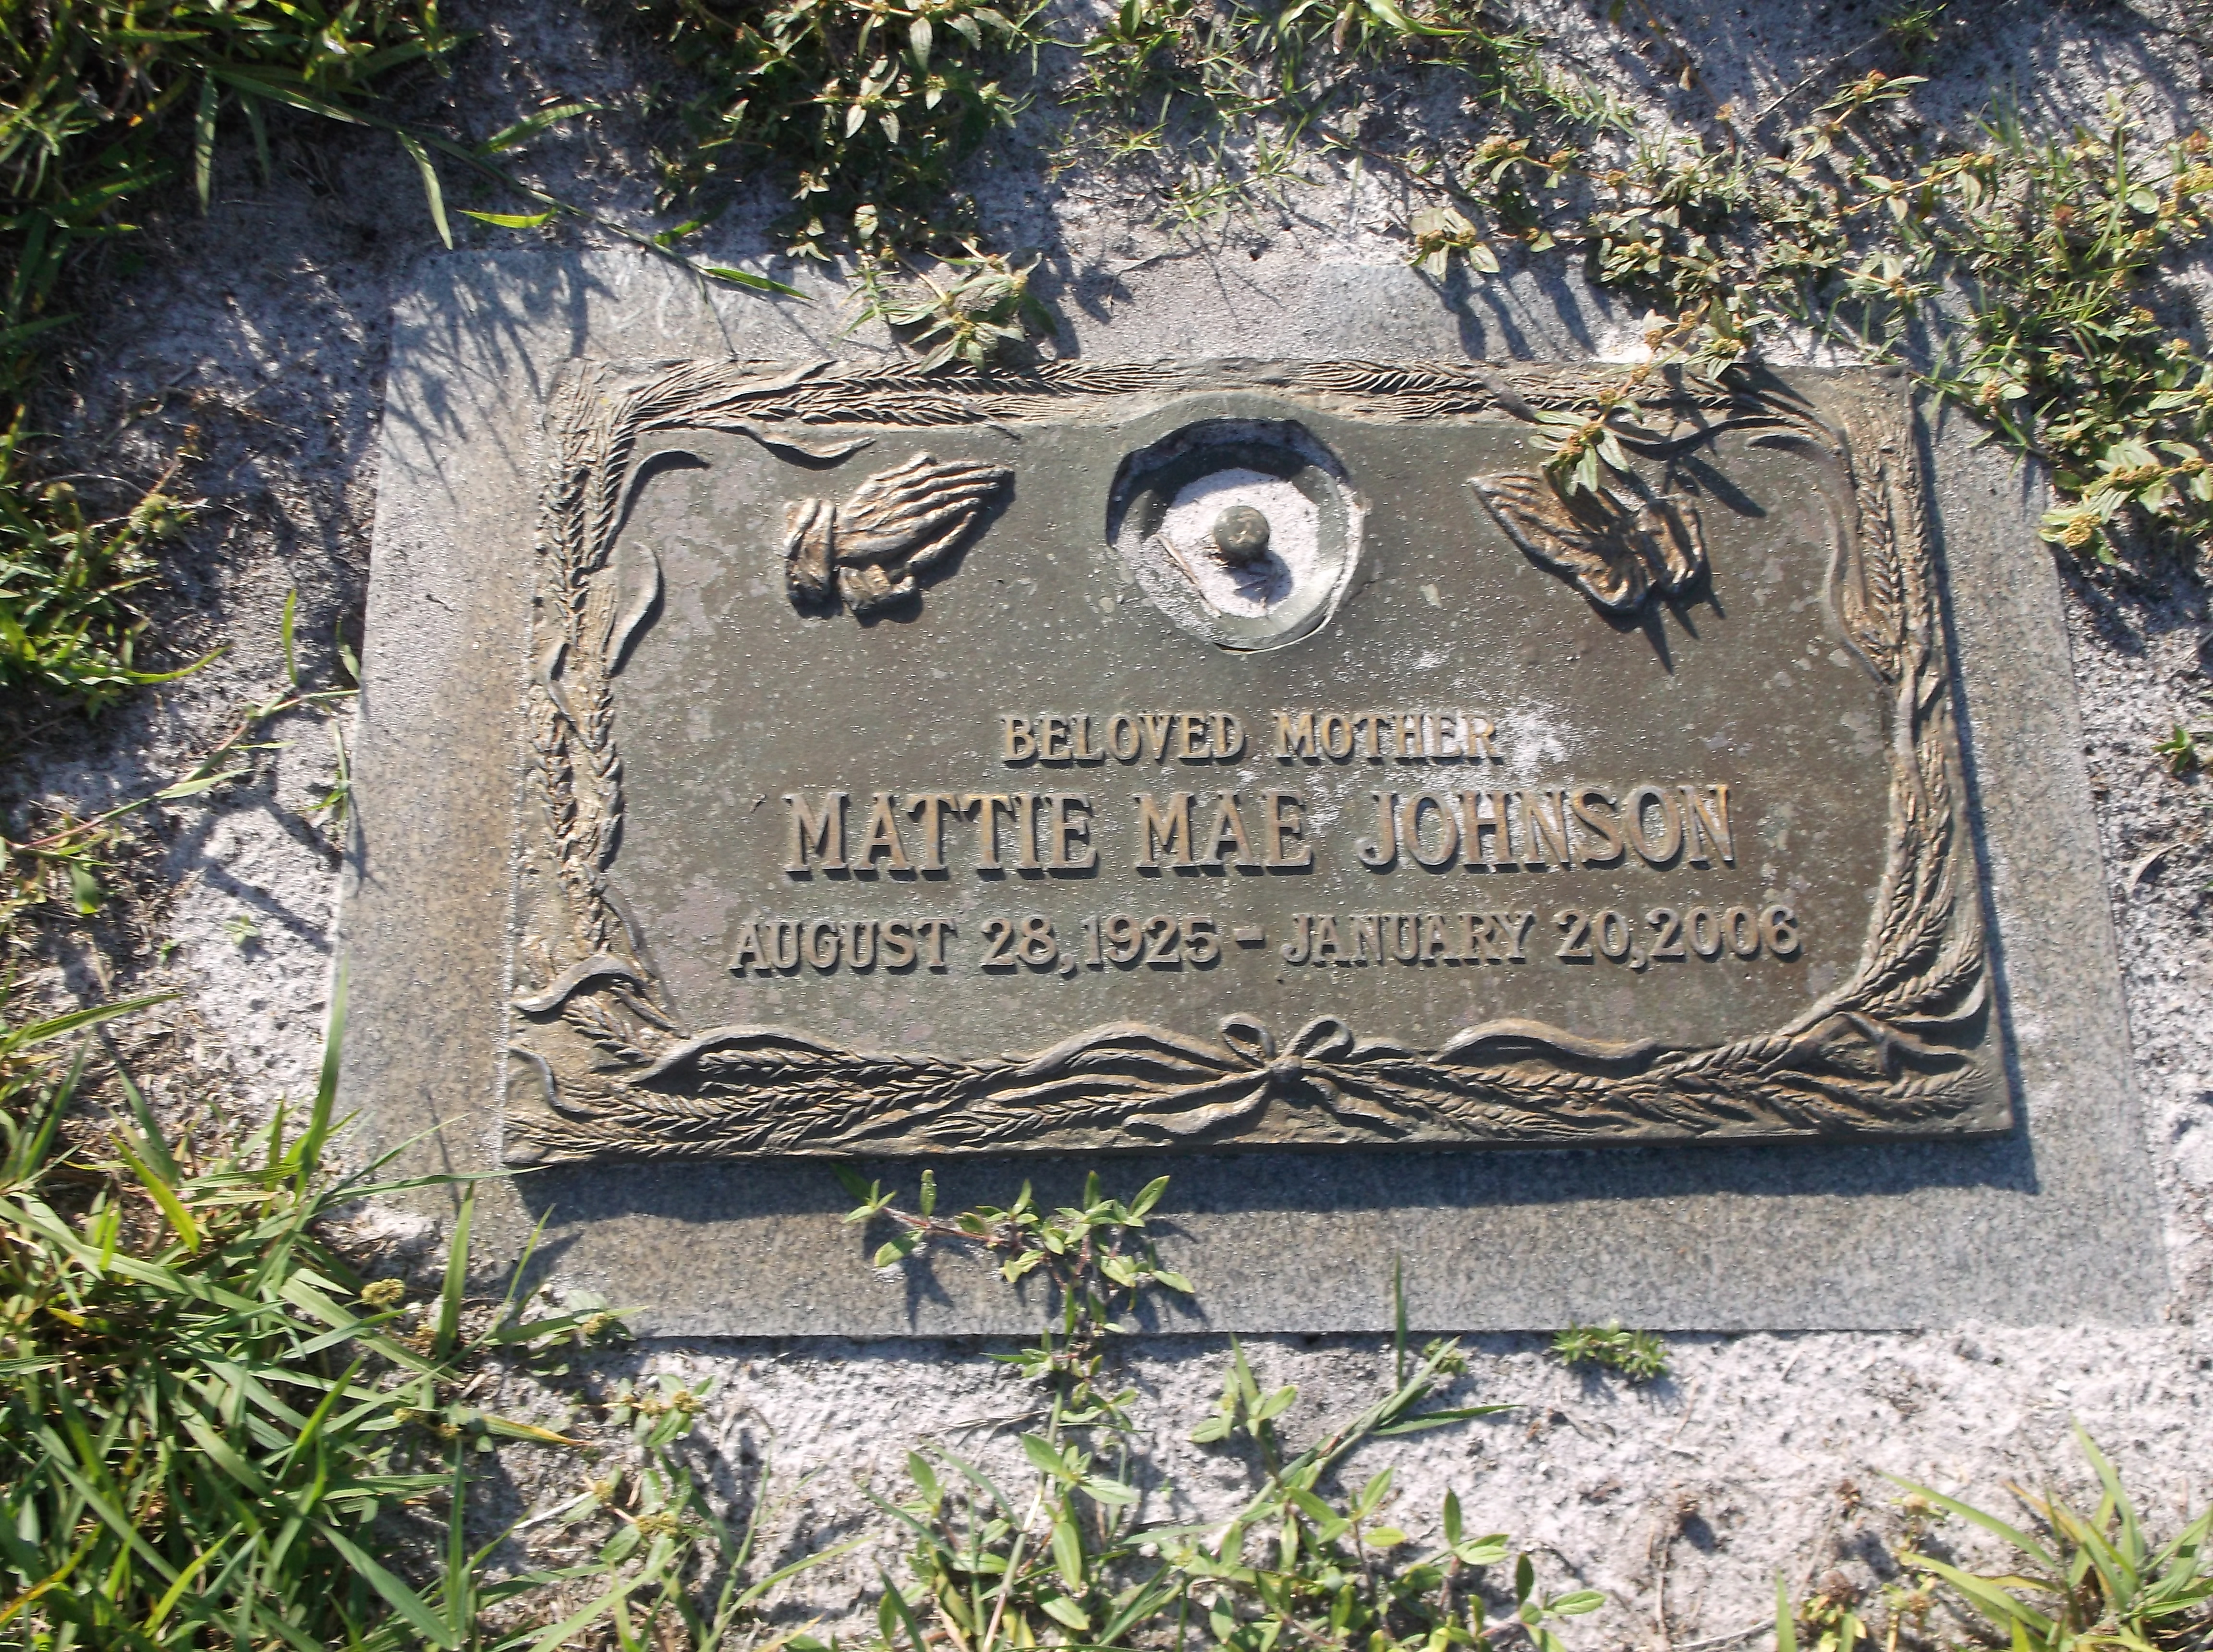 Mattie Mae Johnson